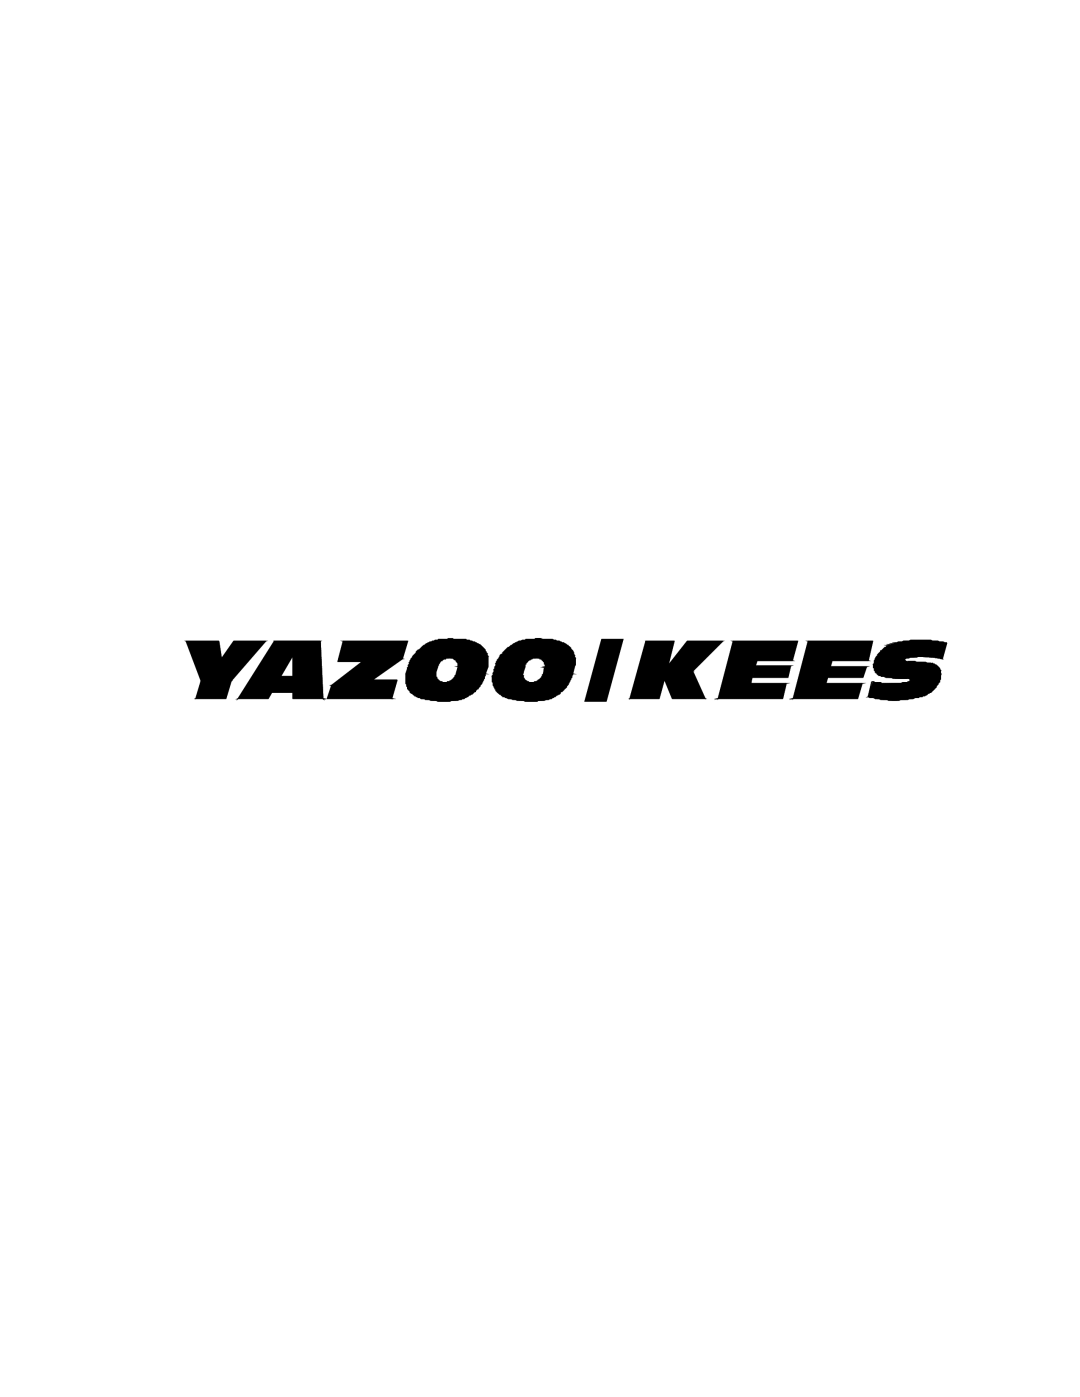 Yazoo/Kees KHKW36151, KHKW48171 important safety instructions 